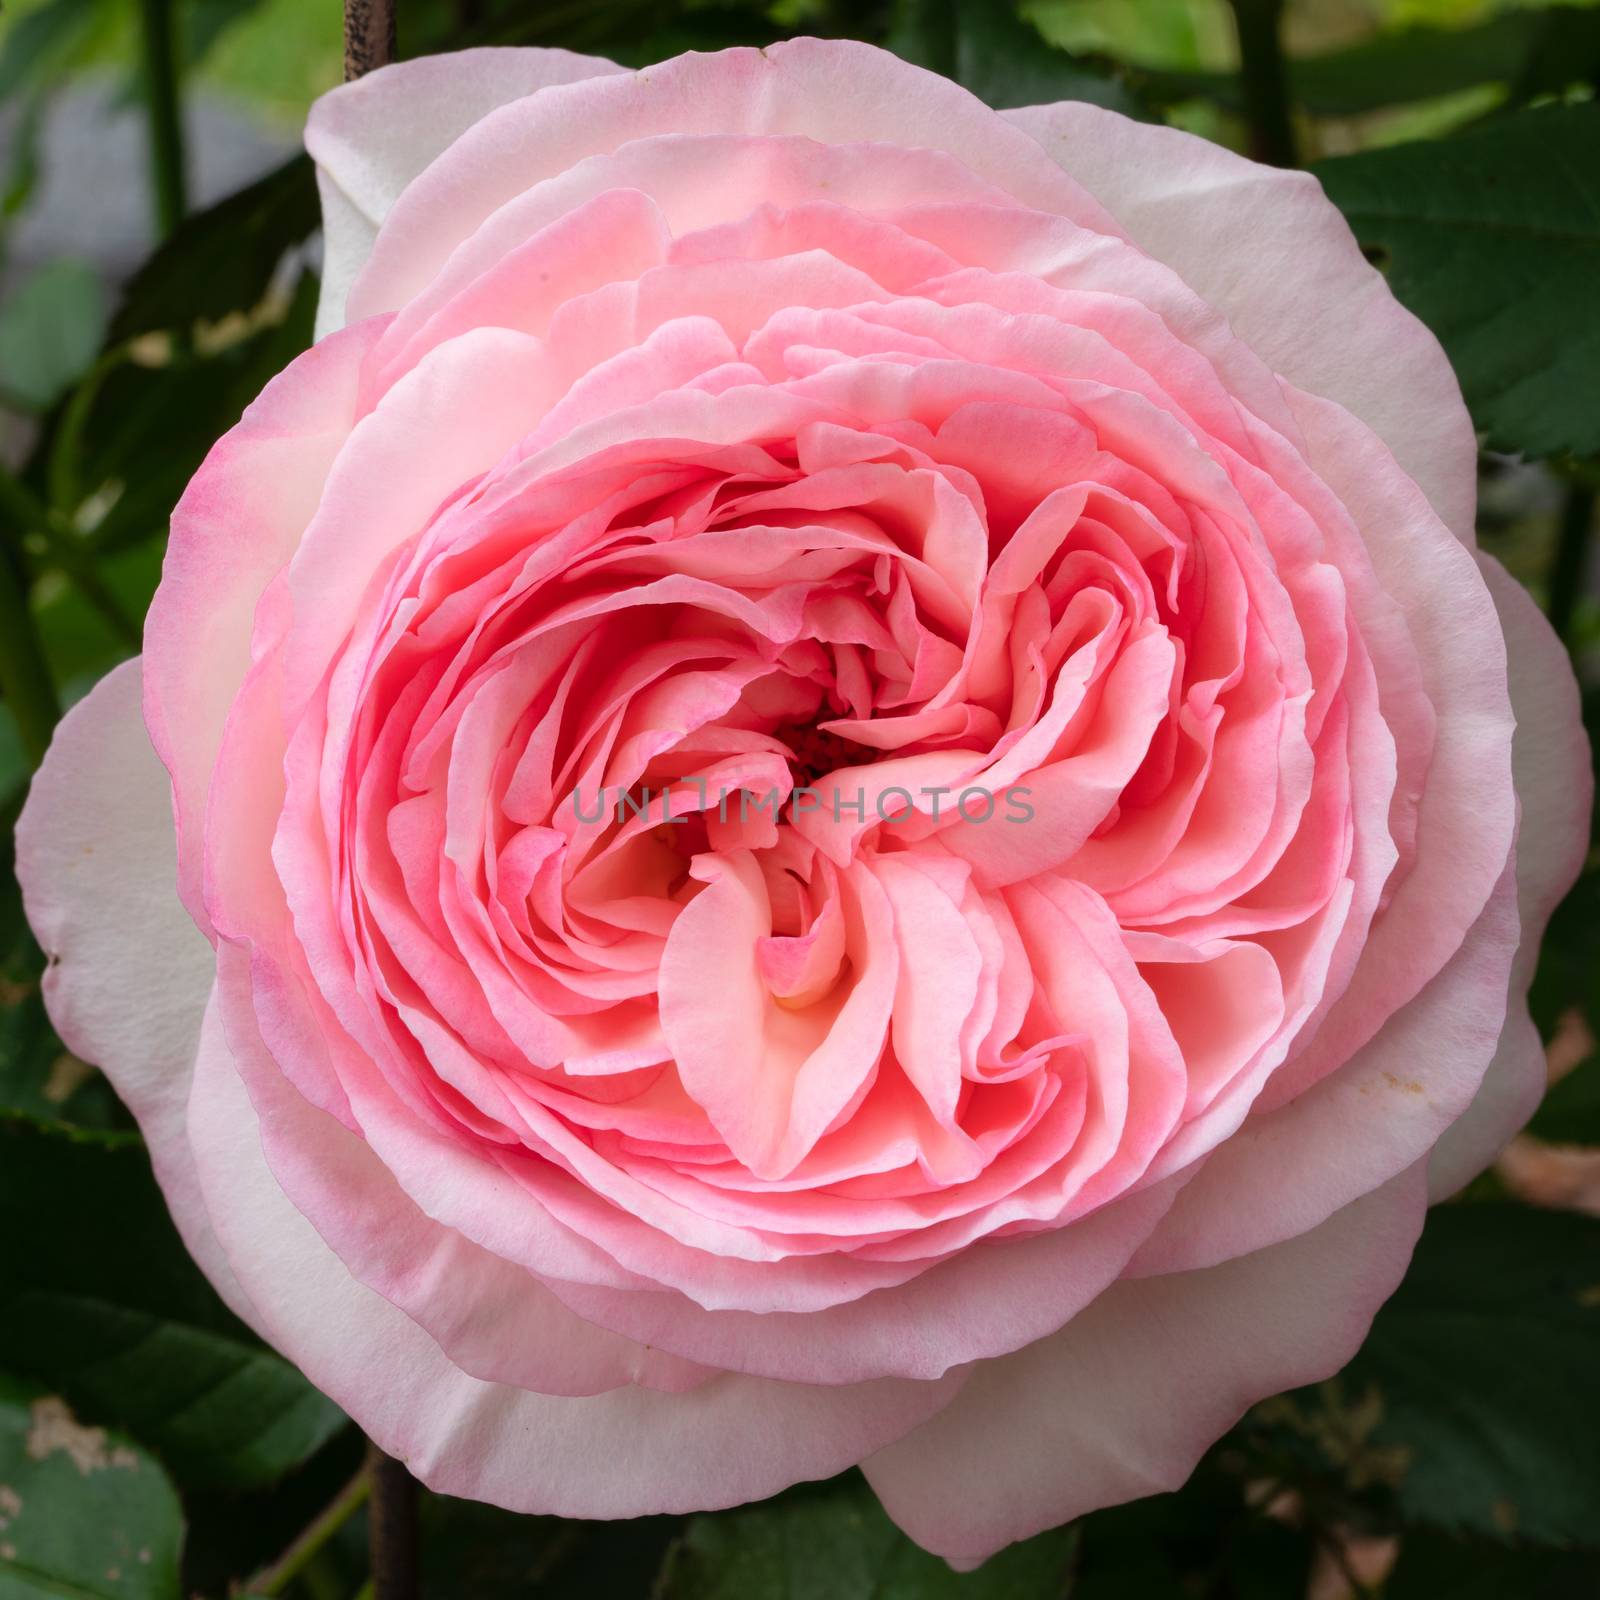 Shrub rose 'Eden rose 85', Rosa by alfotokunst